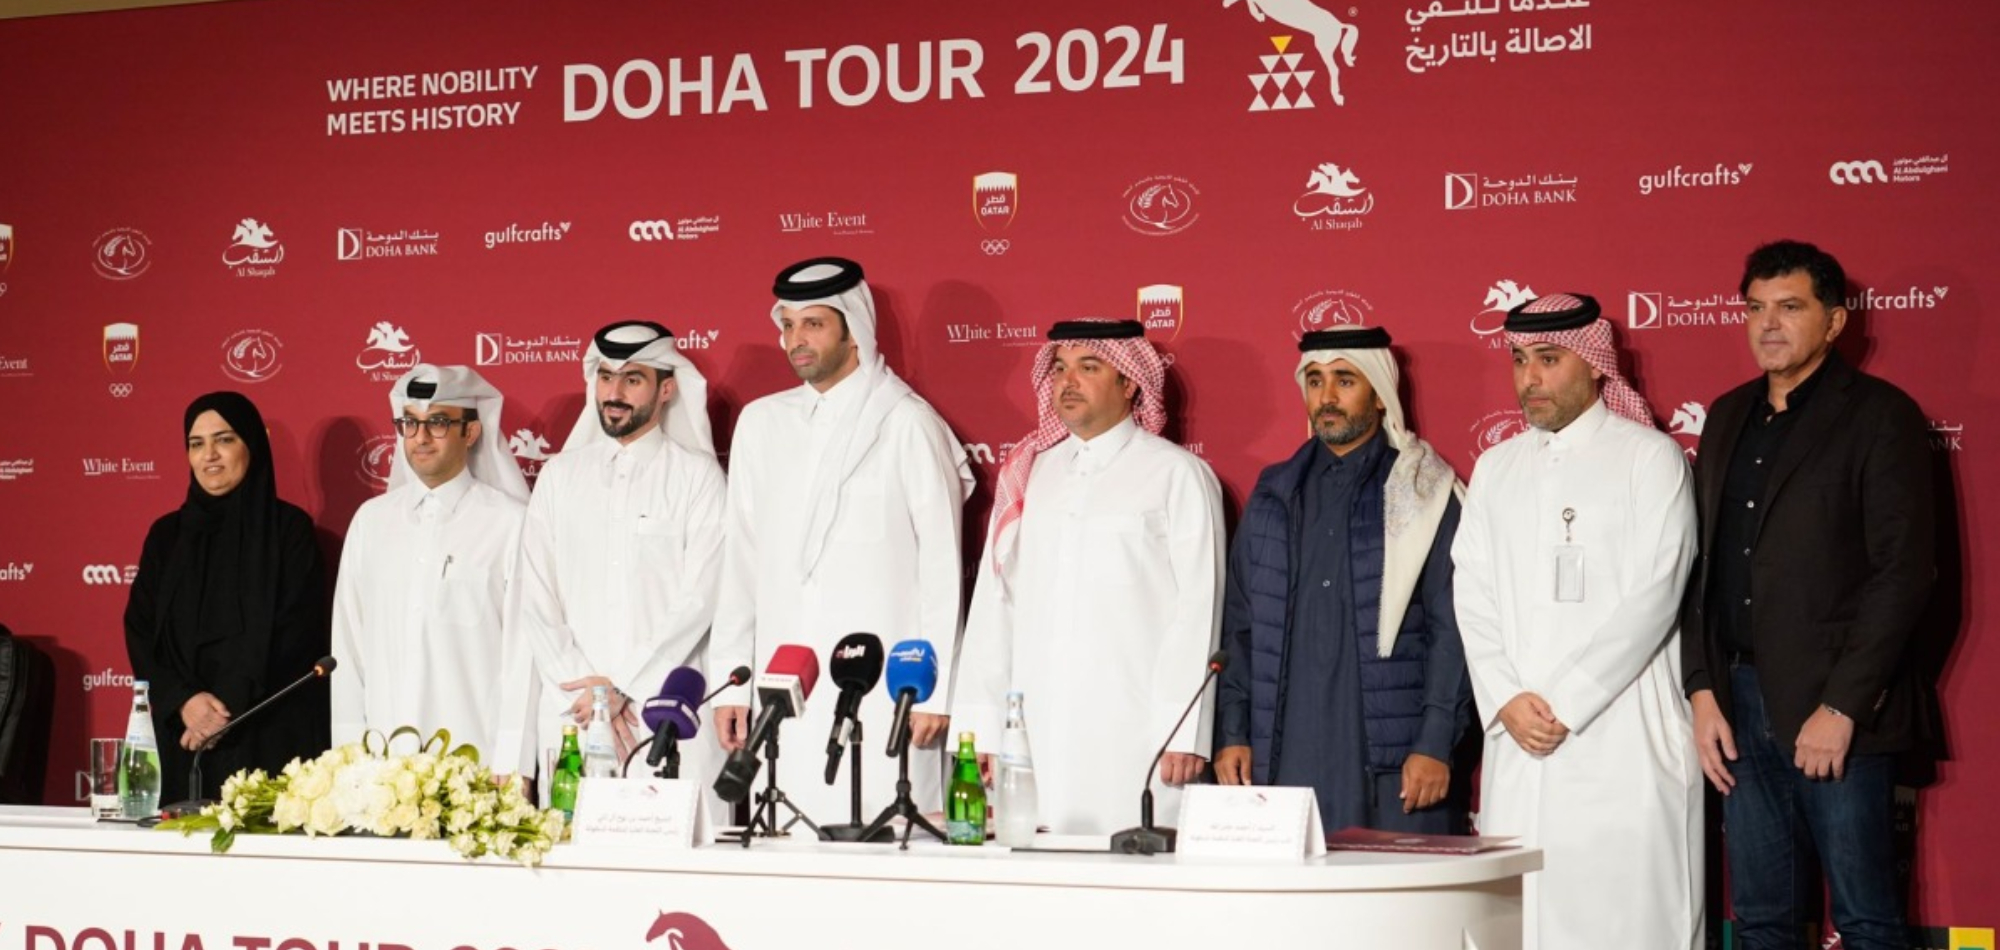 Doha Tour 2024 set to begin at Al Shaqab